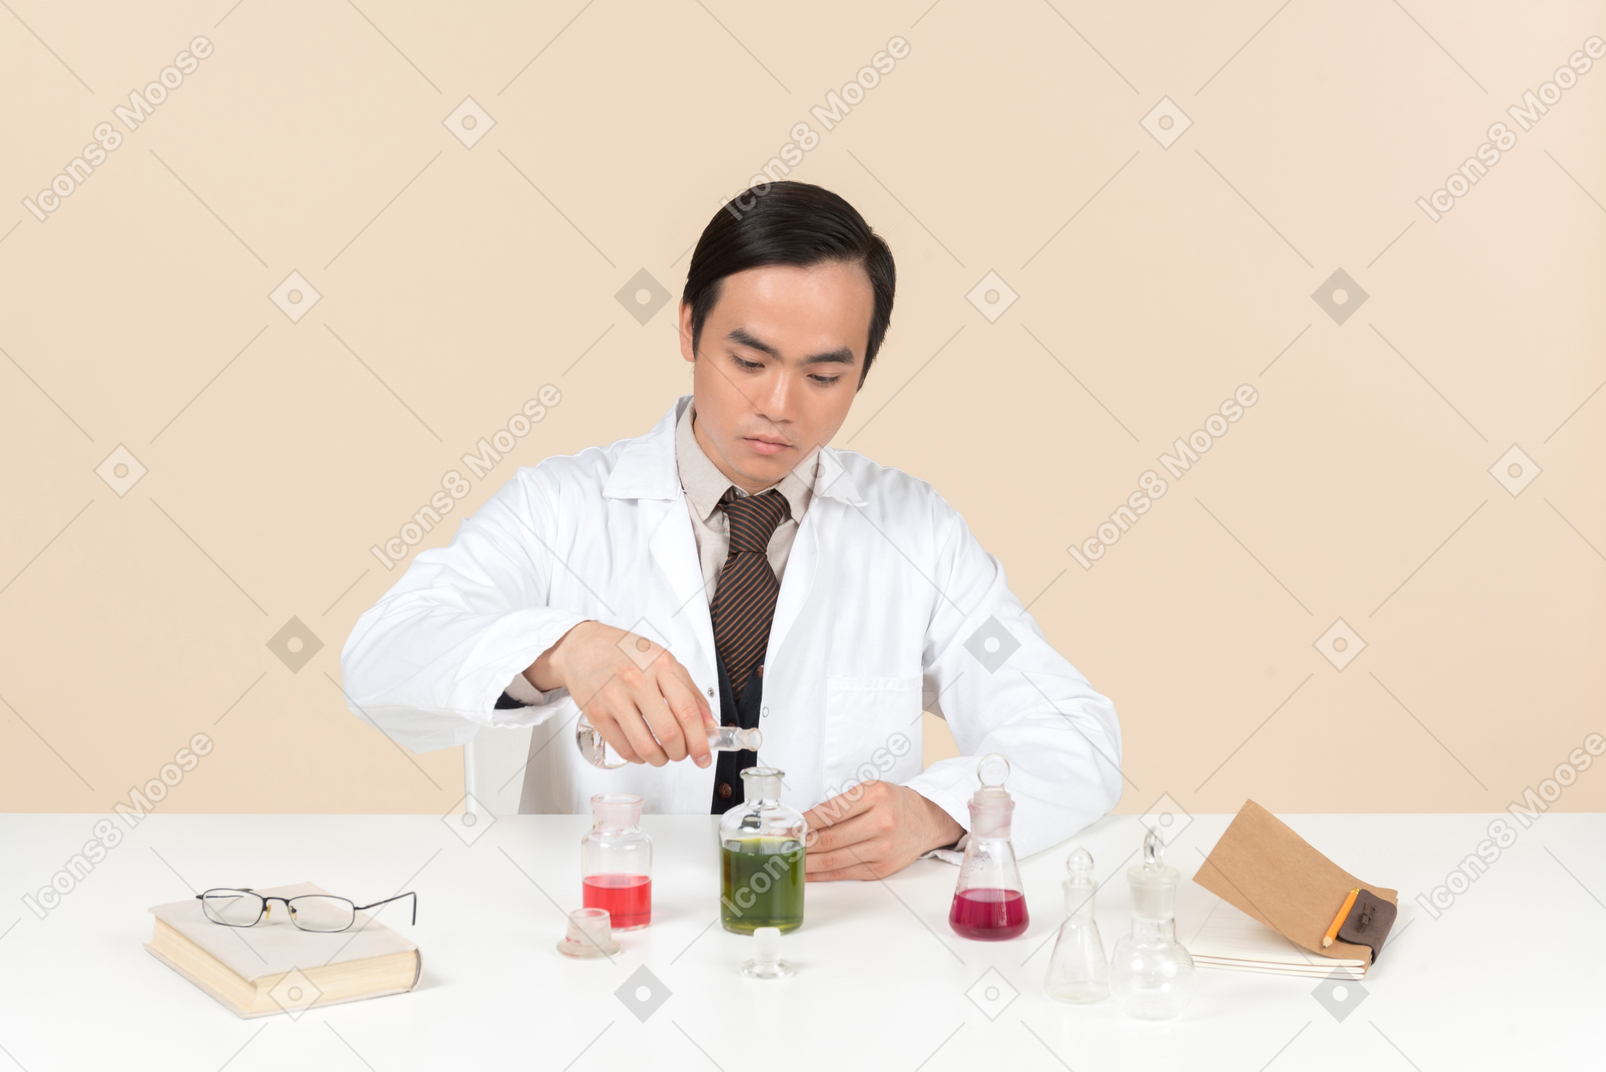 Un scientifique asiatique en blouse blanche travaillant sur une expérience chimique